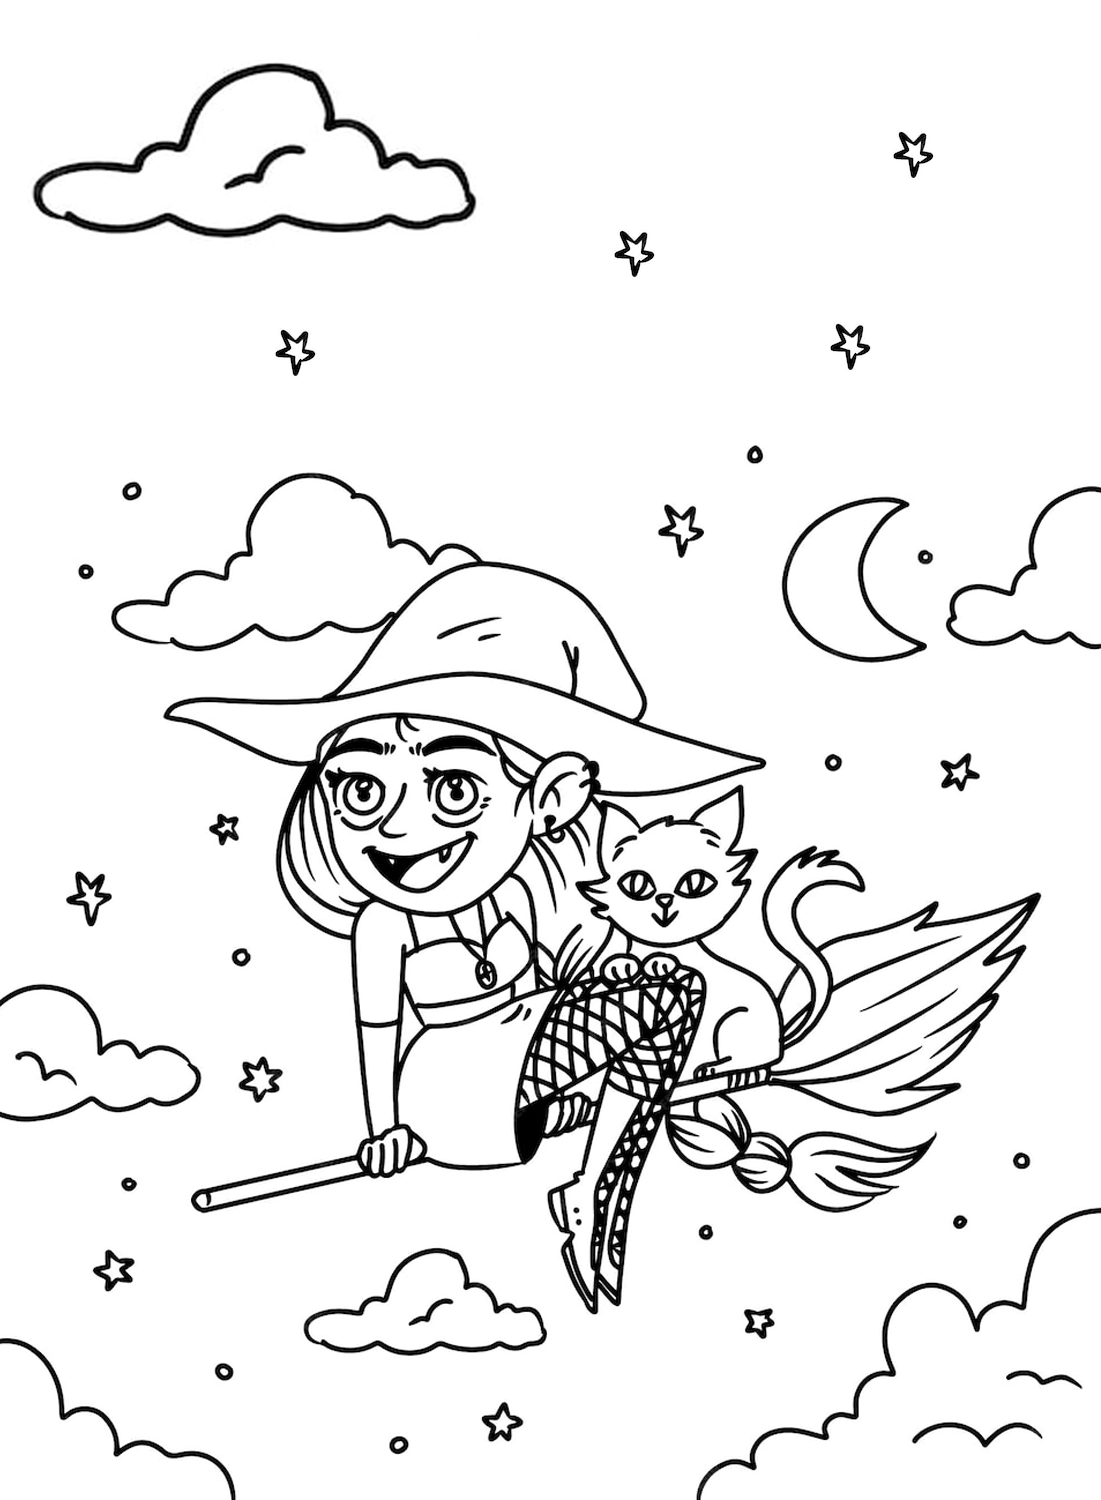 Immagine da colorare di un gatto felice e una strega di Cute Halloween